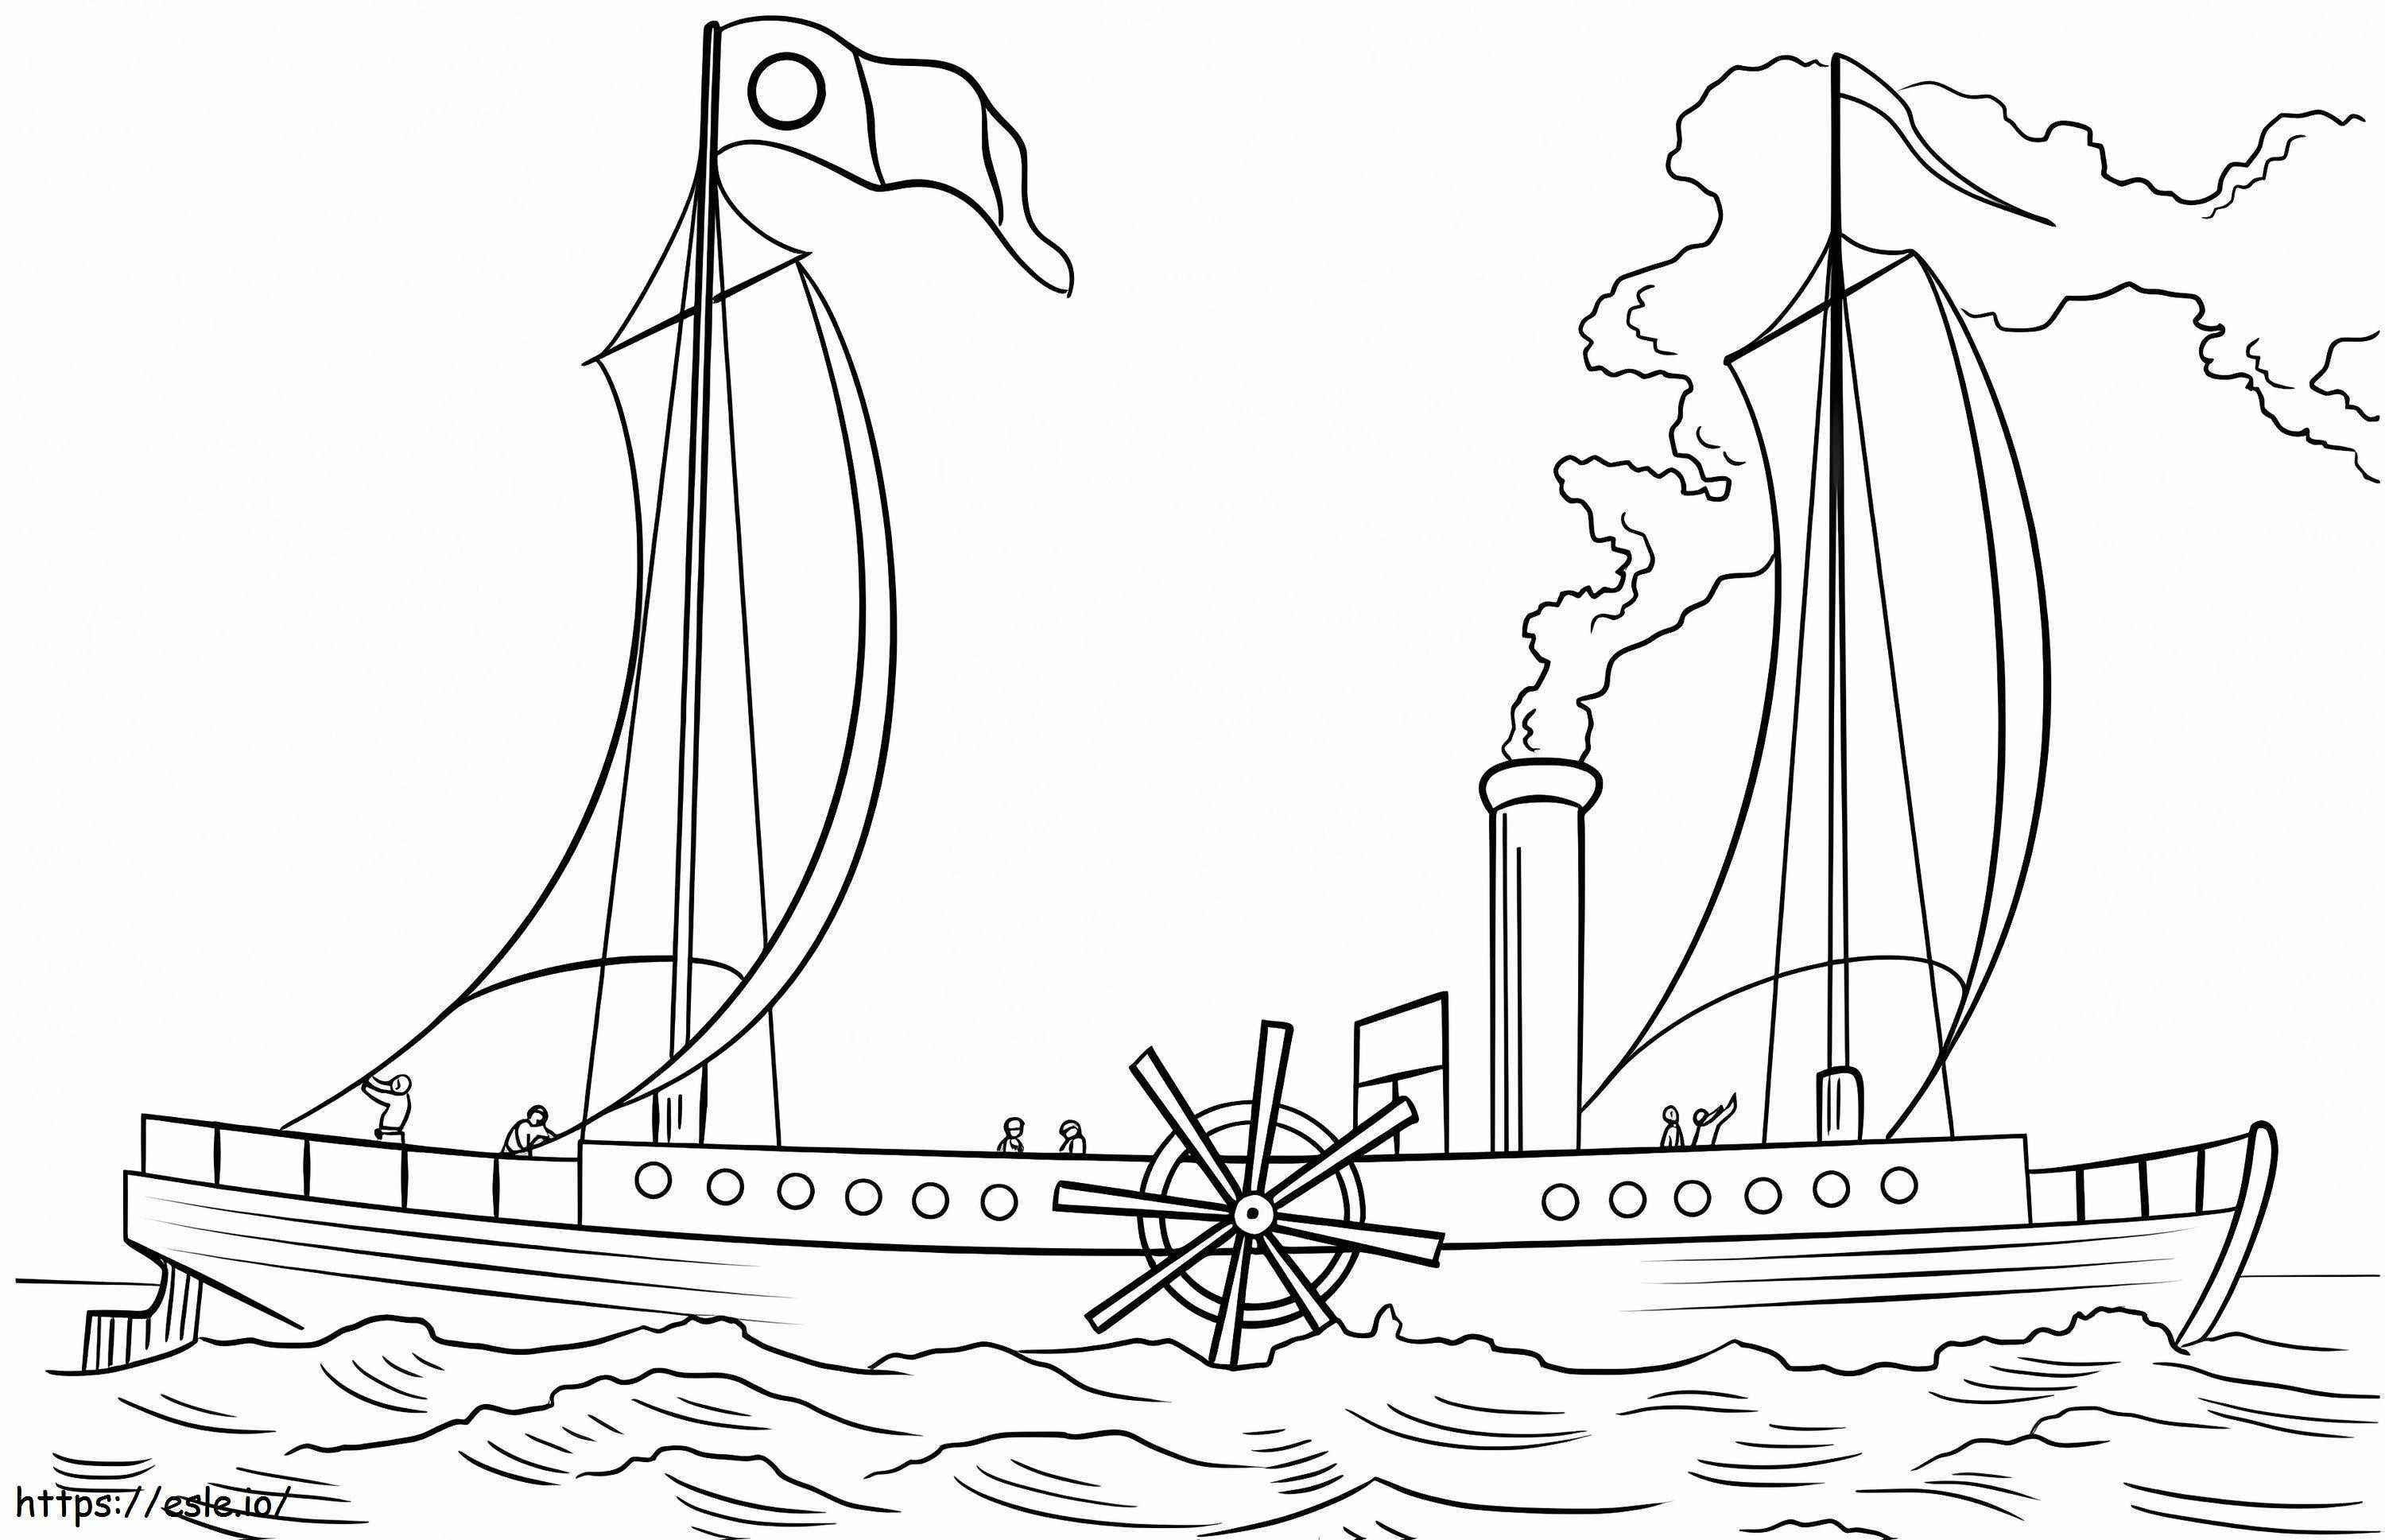 Statek parowy Clermont kolorowanka